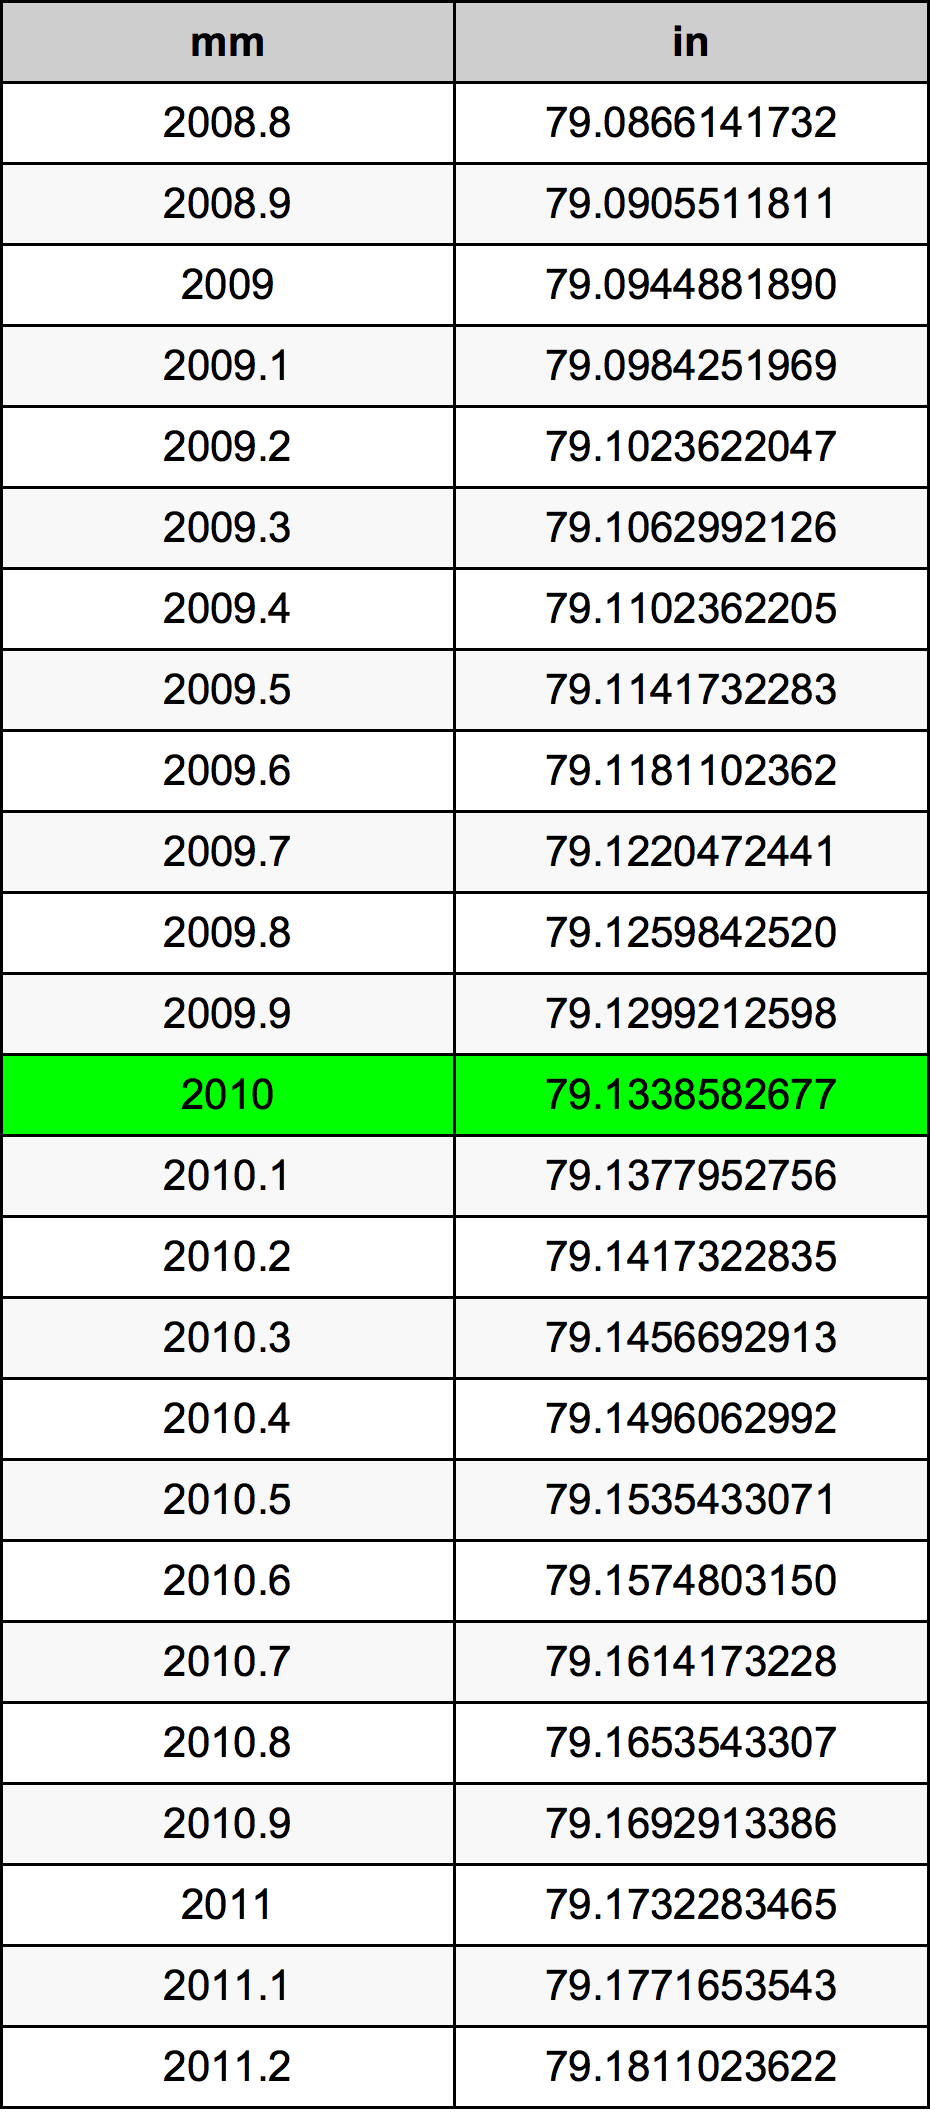 2010ミリメートル換算表